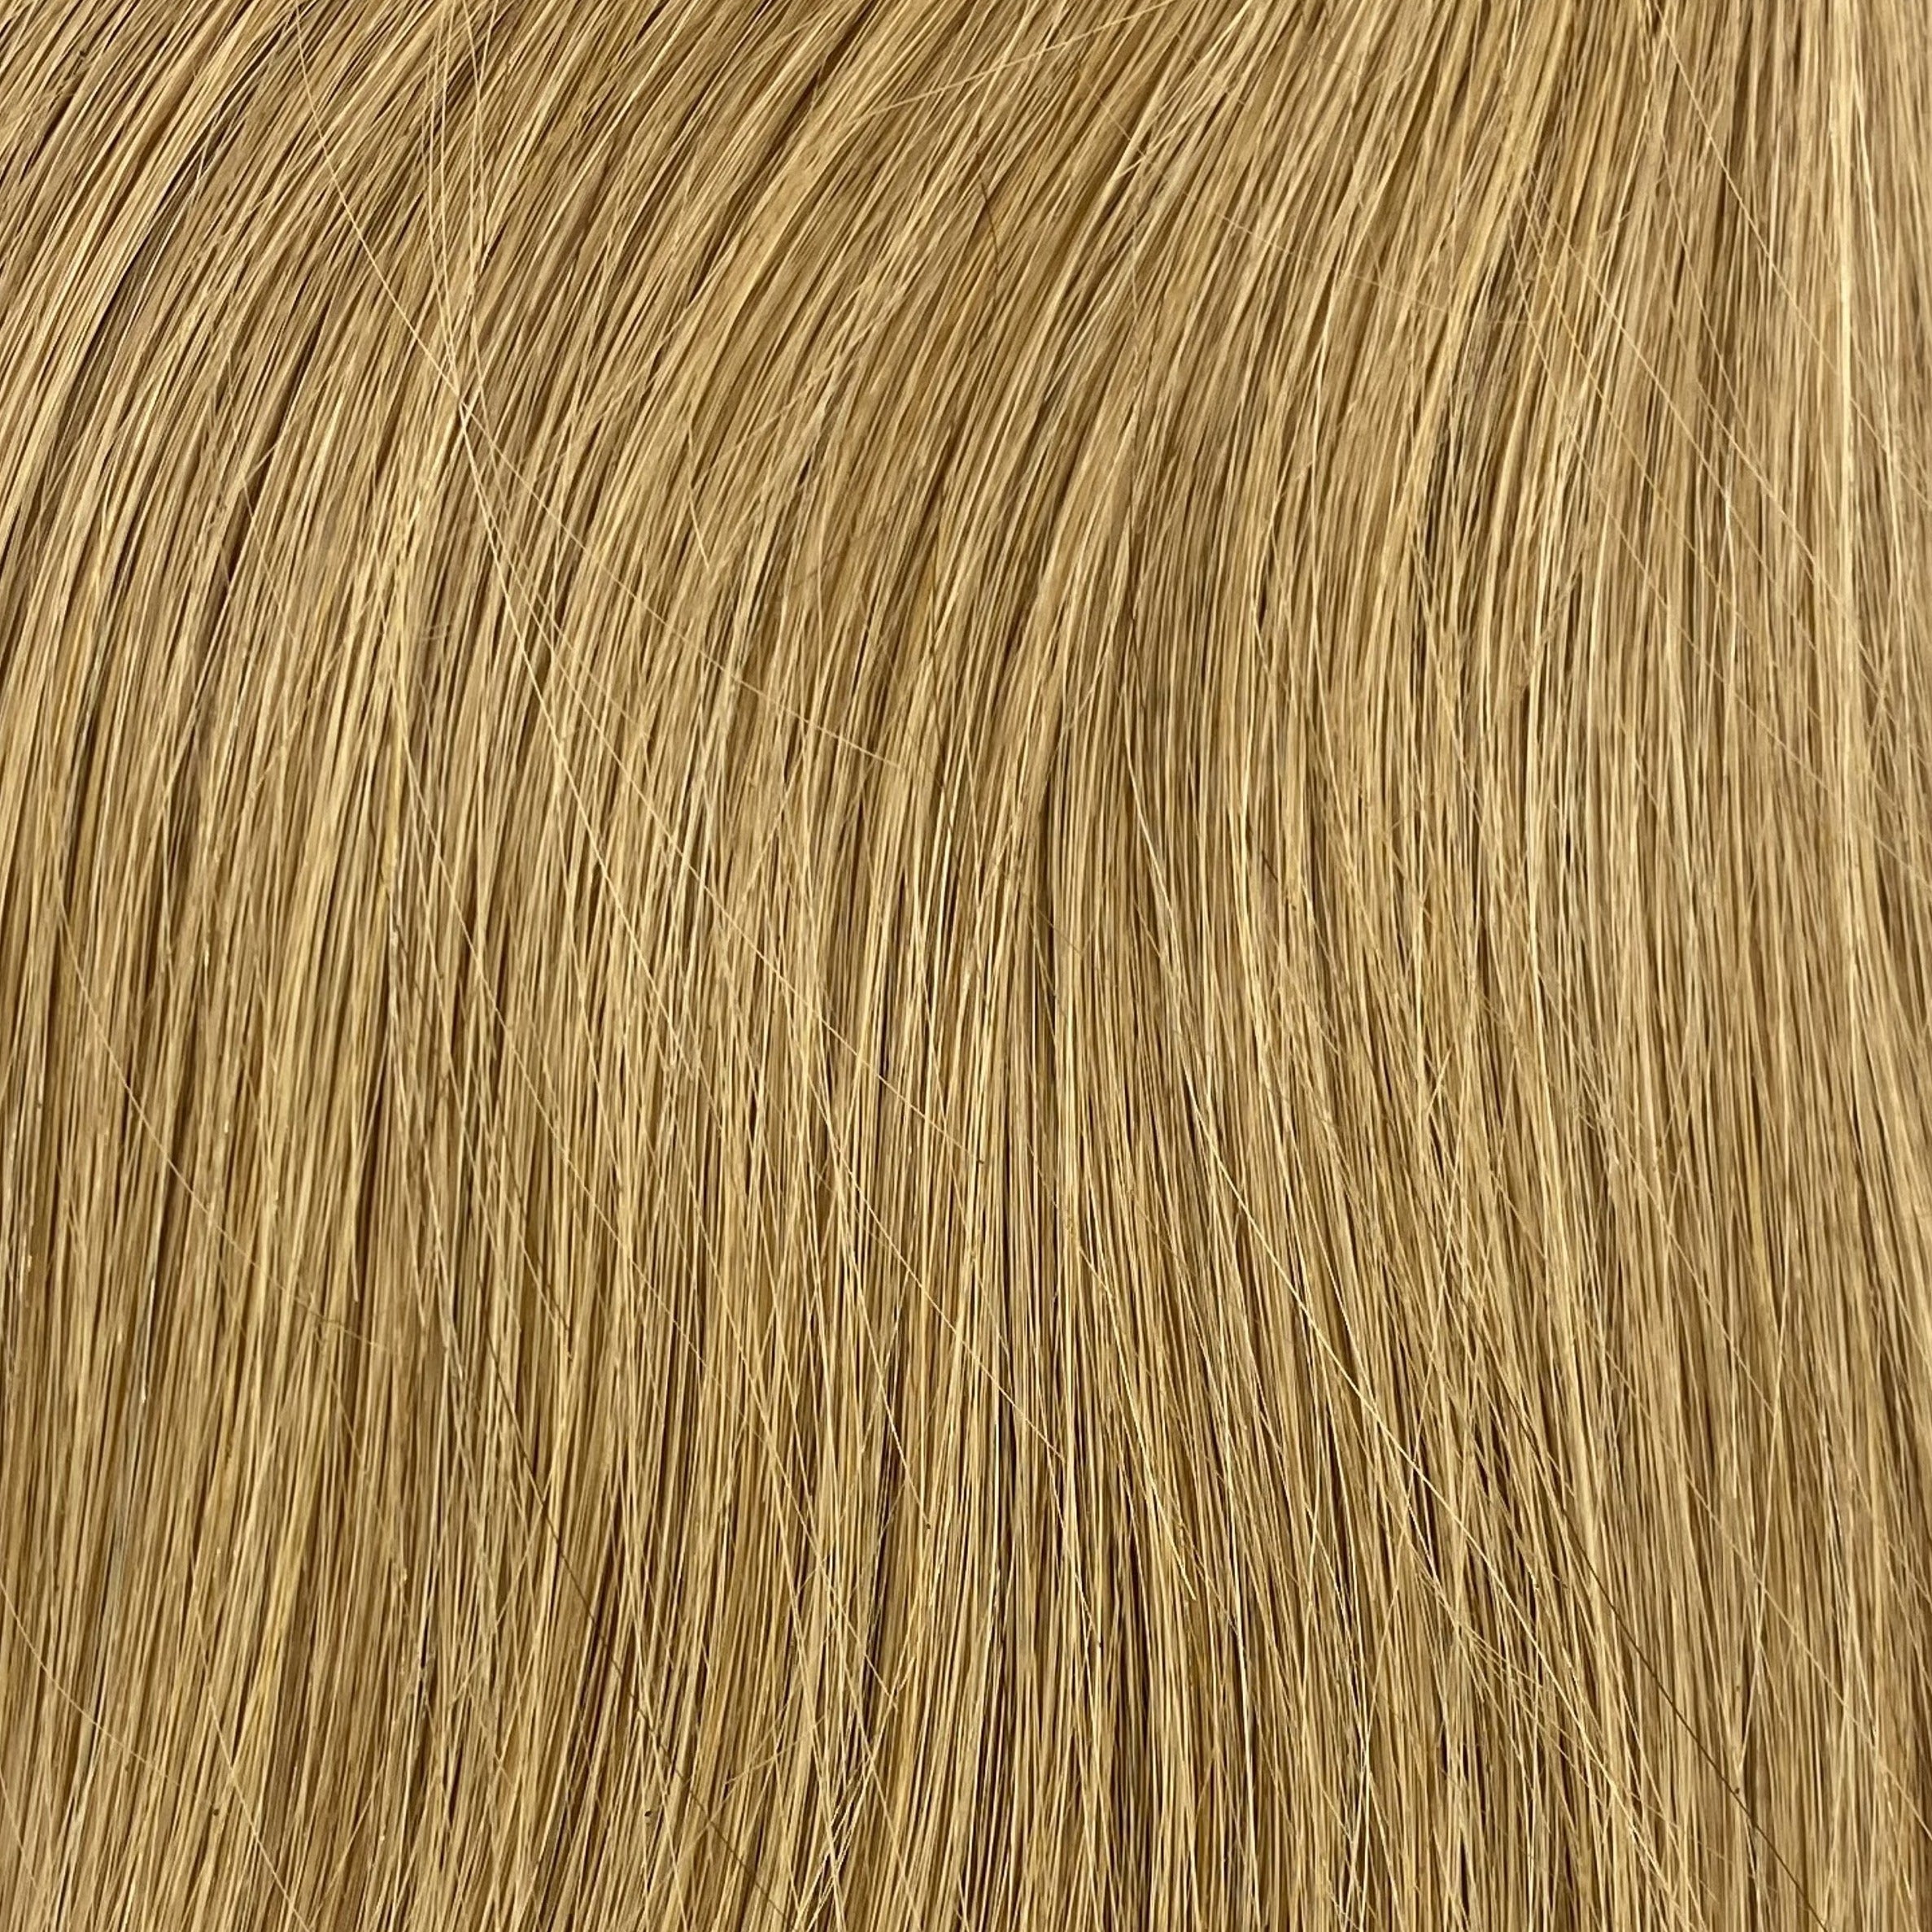 Velo Sale #12 - 16 inches - Dark Golden Blonde